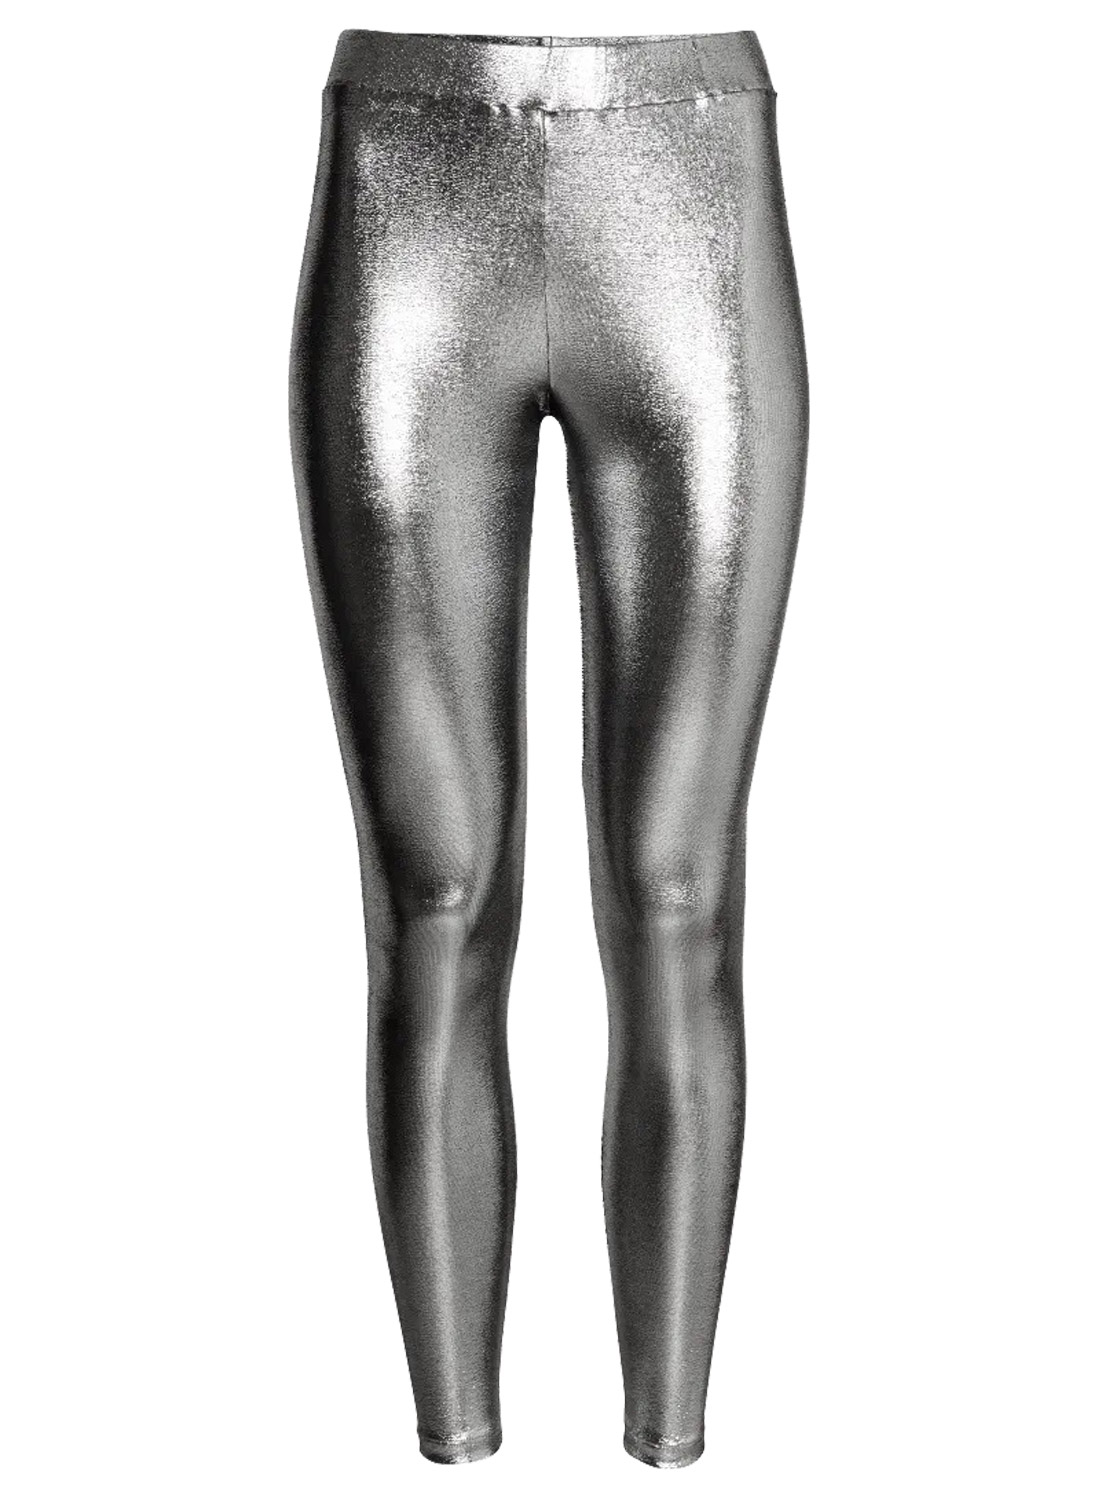 Silver Leggings är Leggings av högkvalitativt material andningsbara, bekväma att röra vid och bekväma mot huden.  både till vardags och till fest.